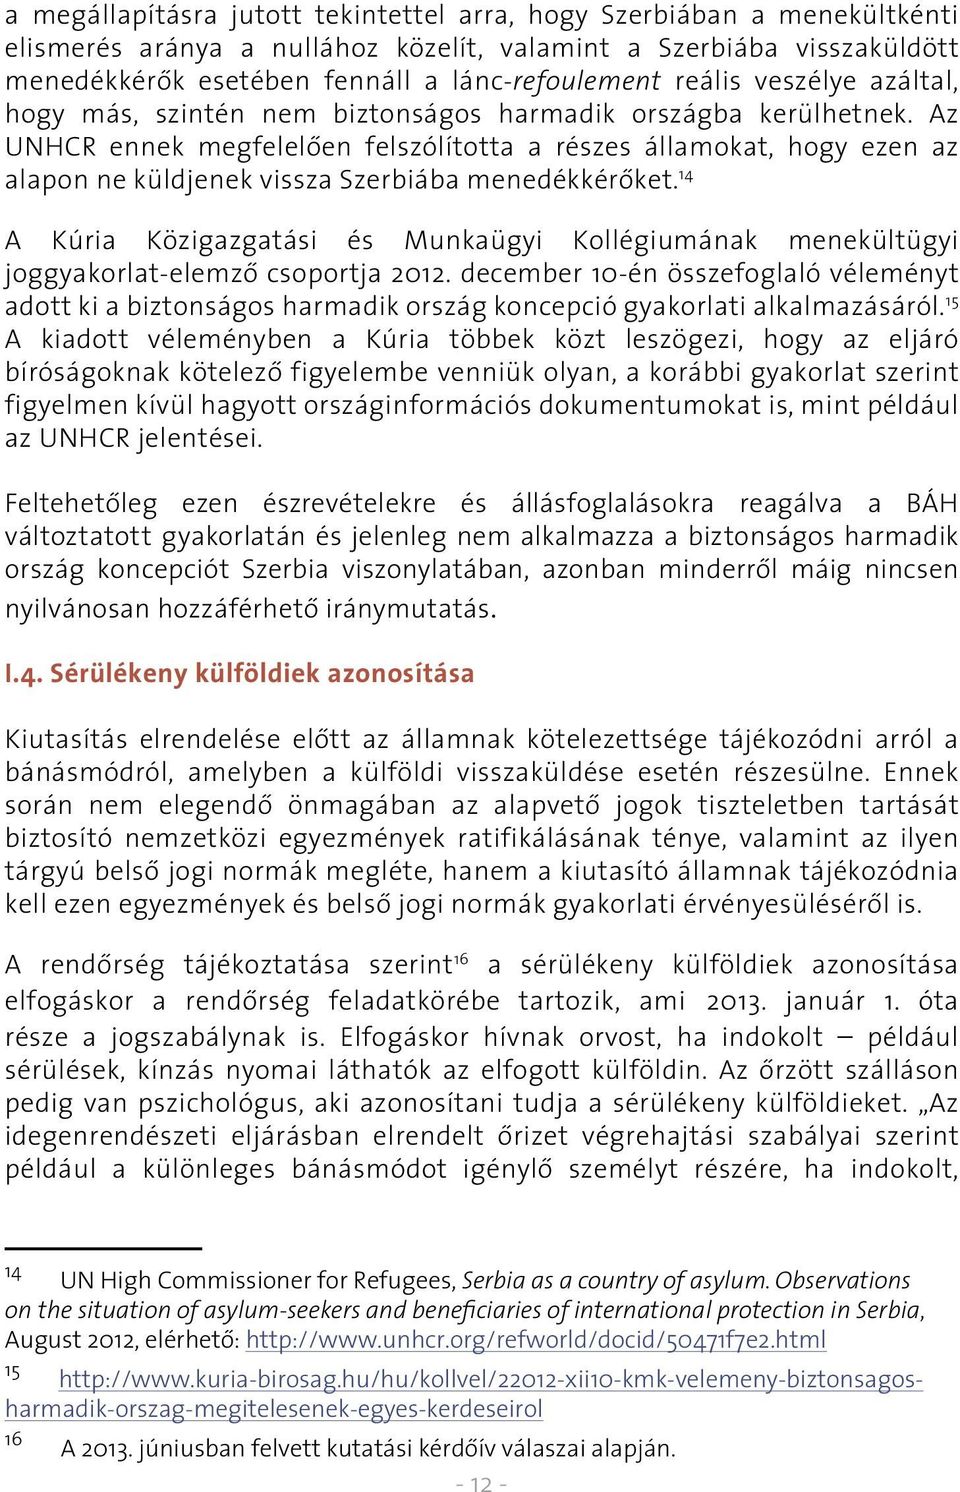 Az UNHCR ennek megfelelôen felszólította a részes államokat, hogy ezen az alapon ne küldjenek vissza Szerbiába menedékkérôket.